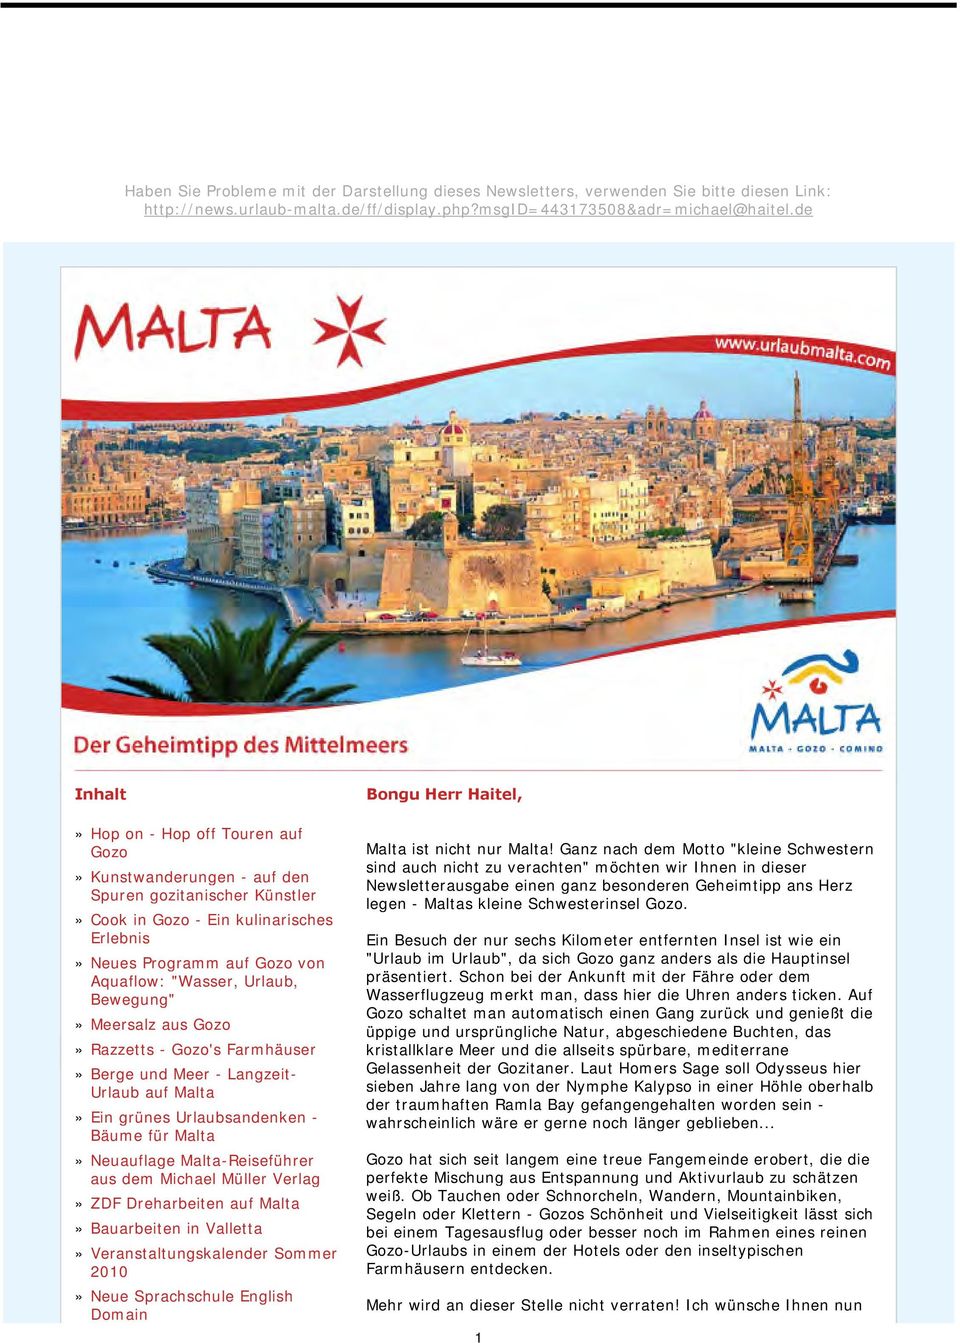 Urlaub, Bewegung"» Meersalz aus Gozo» Razzetts - Gozo's Farmhäuser» Berge und Meer - Langzeit- Urlaub auf Malta» Ein grünes Urlaubsandenken - Bäume für Malta» Neuauflage Malta-Reiseführer aus dem